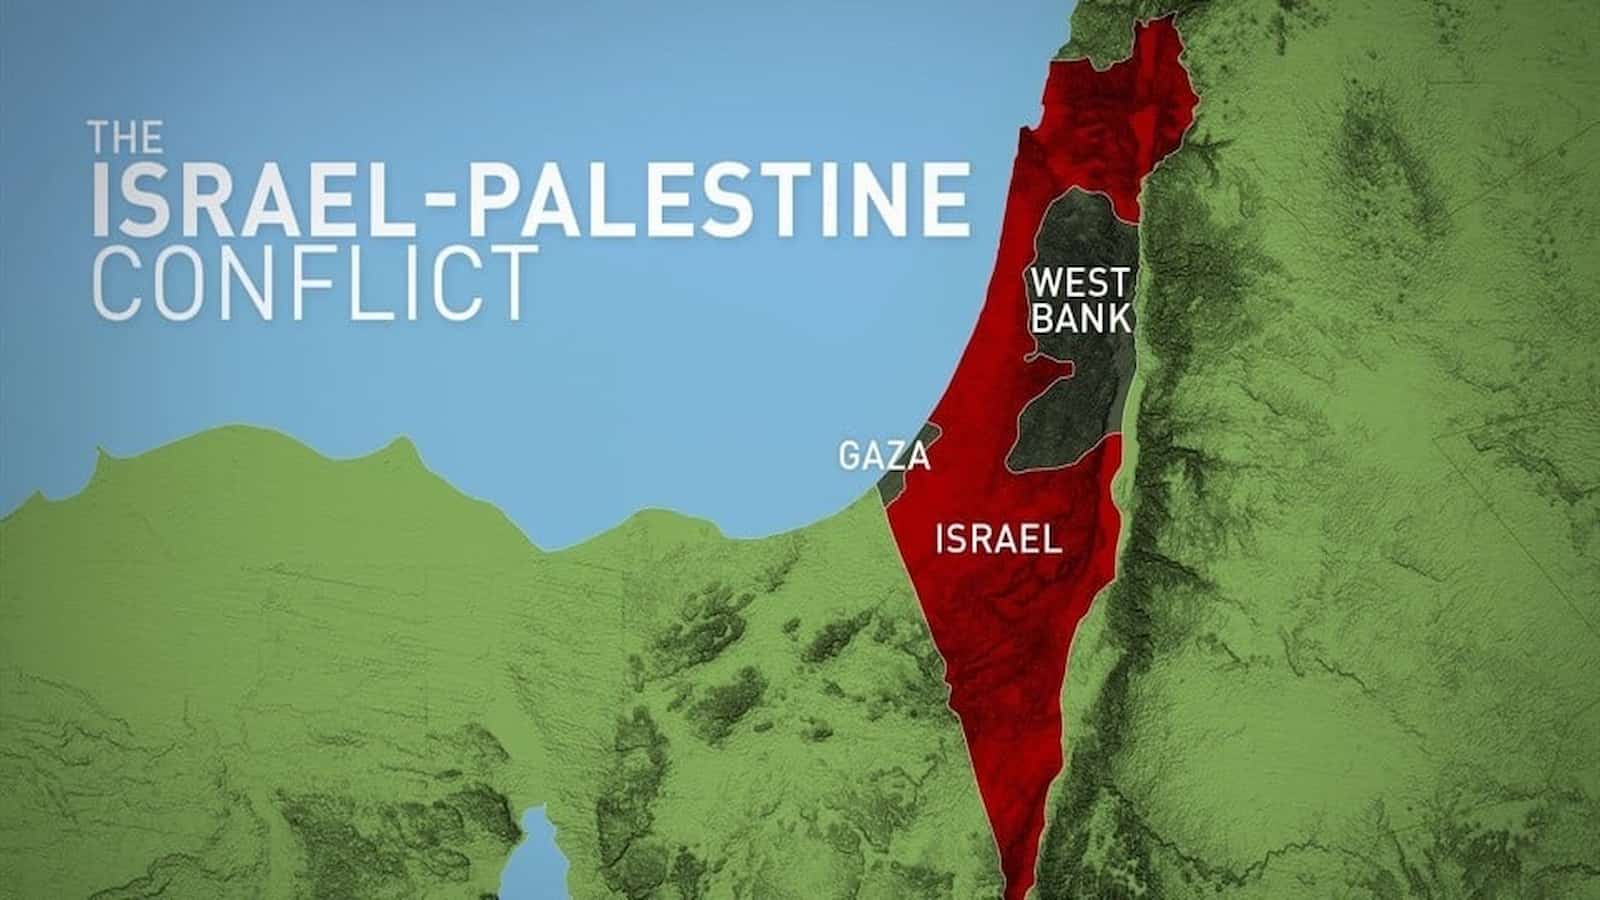 Palestine-Israeli conflict